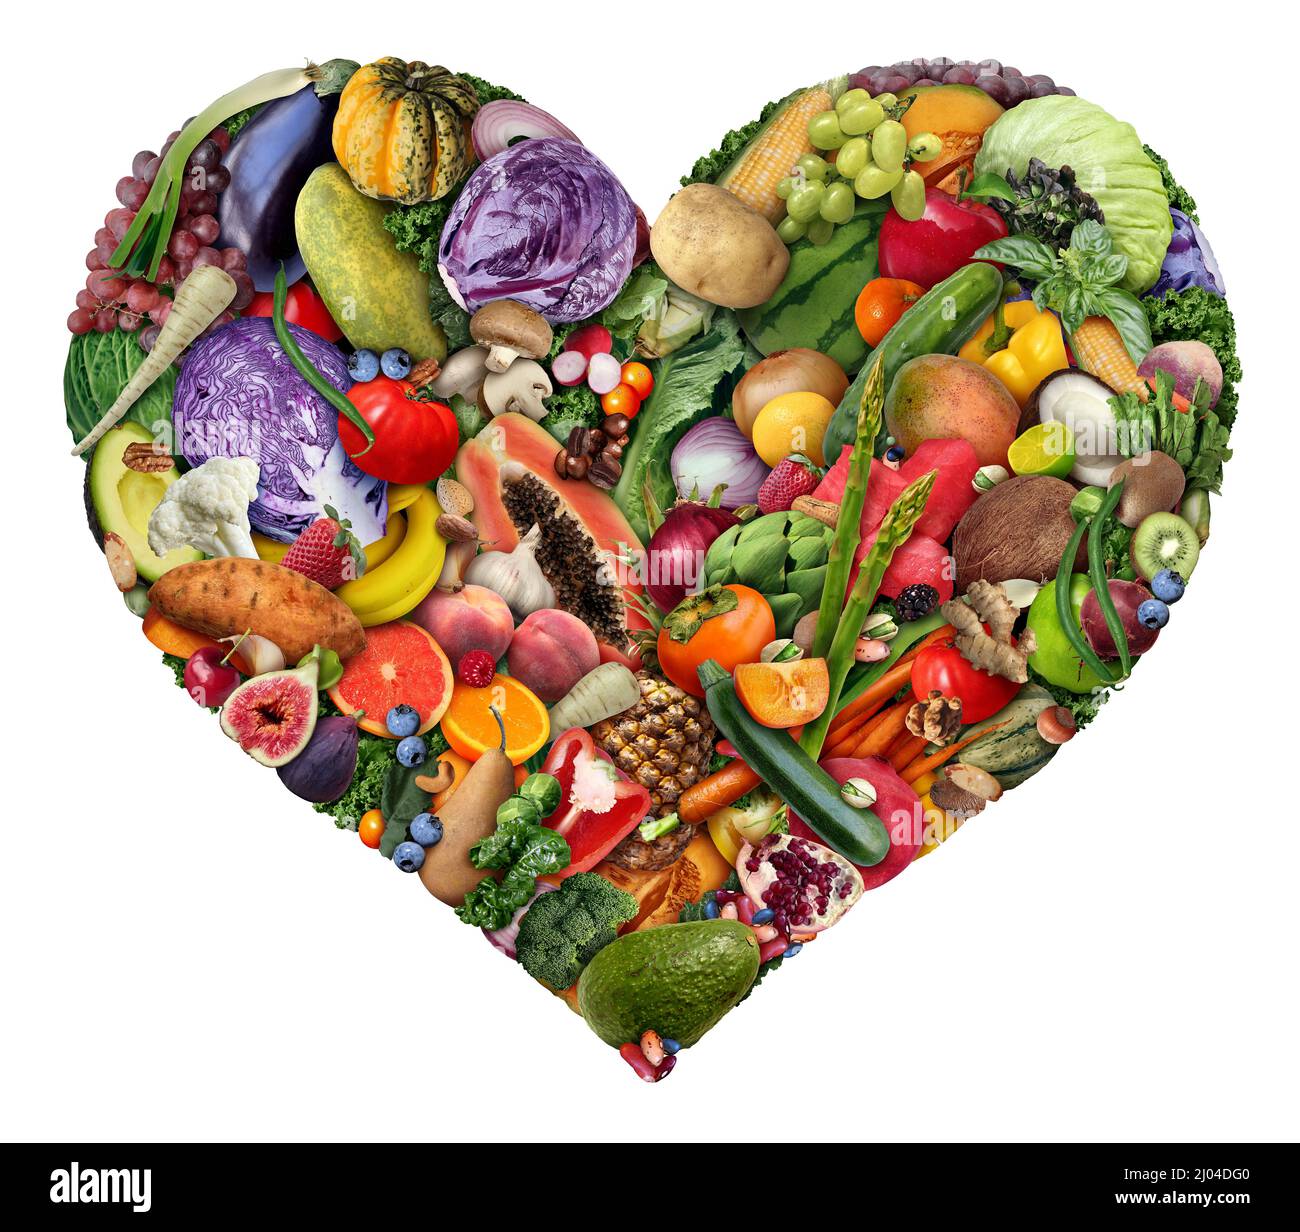 Frutta e verdura amore e salute del cuore simbolo per vegano e veganismo o amare cibo sano come un gruppo di frutta fresca matura e noci con fagioli. Foto Stock